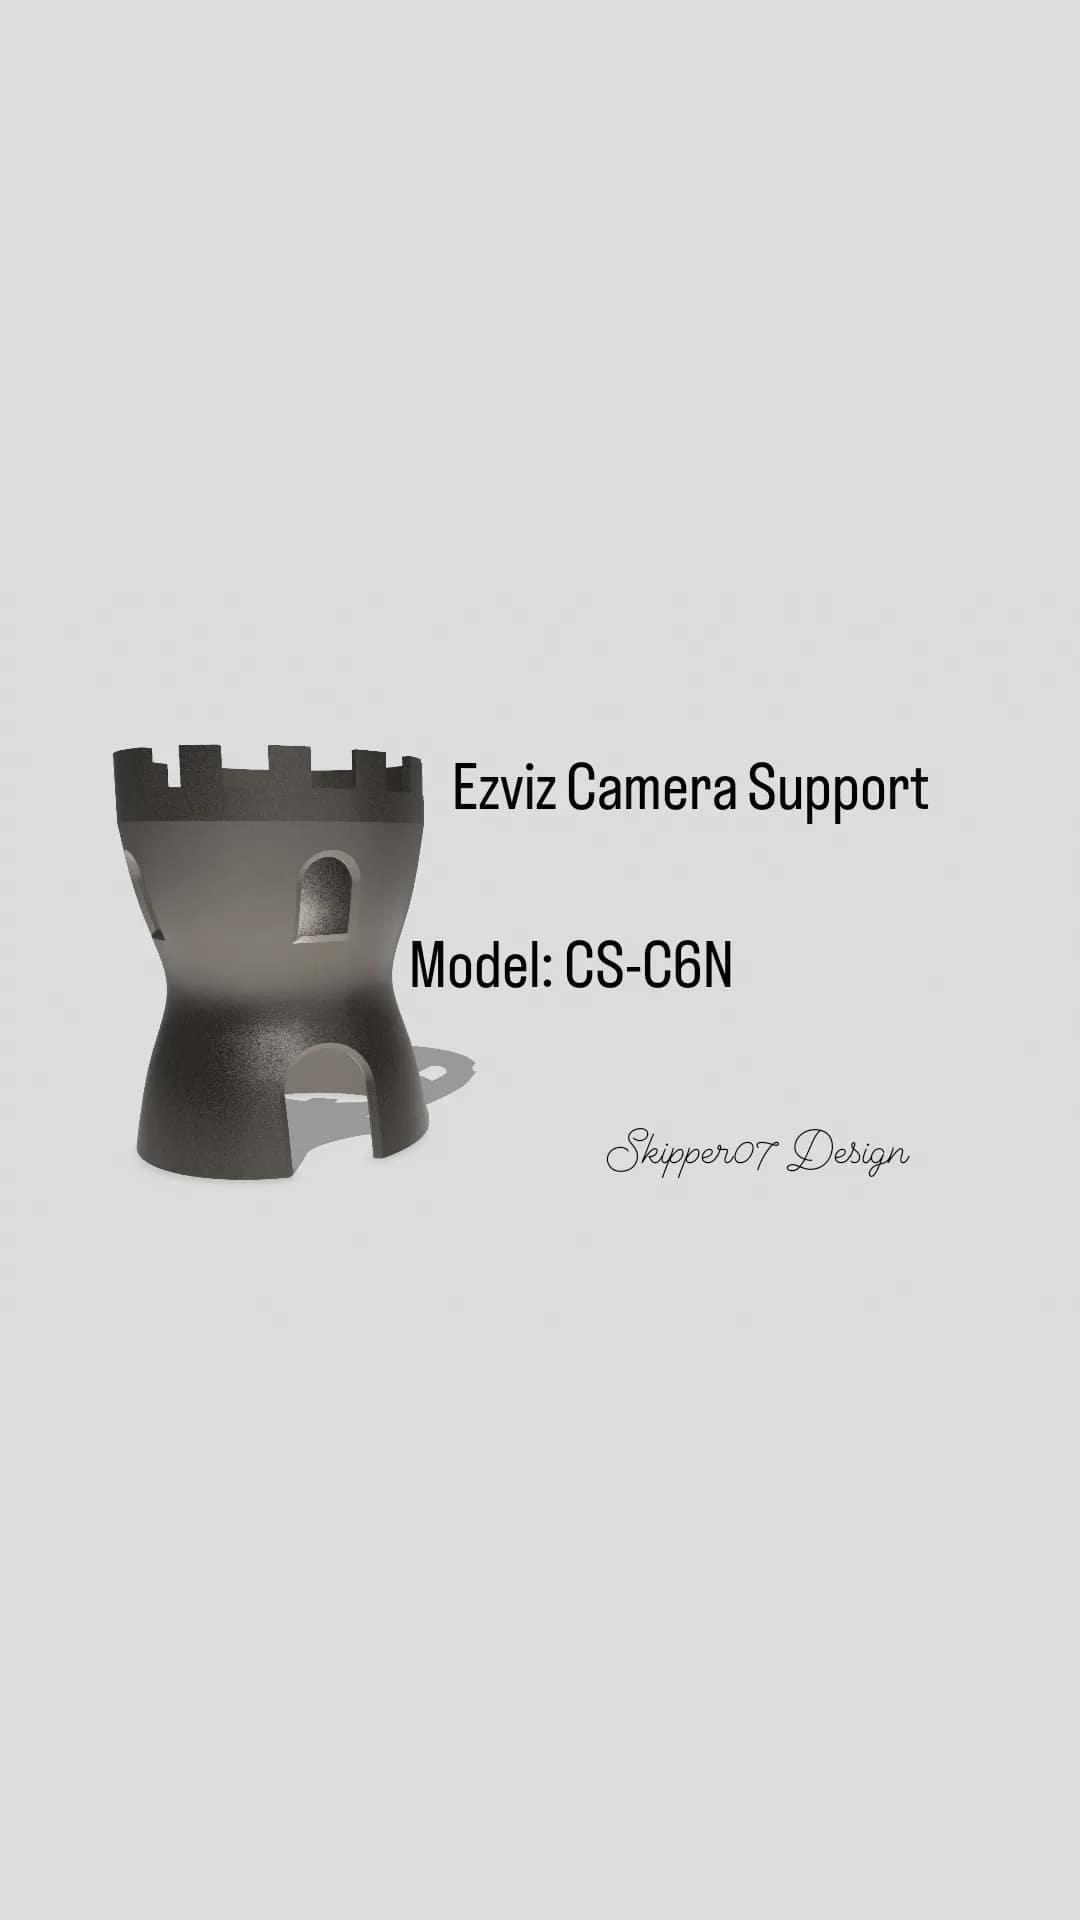 EZVIZ Camera Support 2.3.stl 3d model